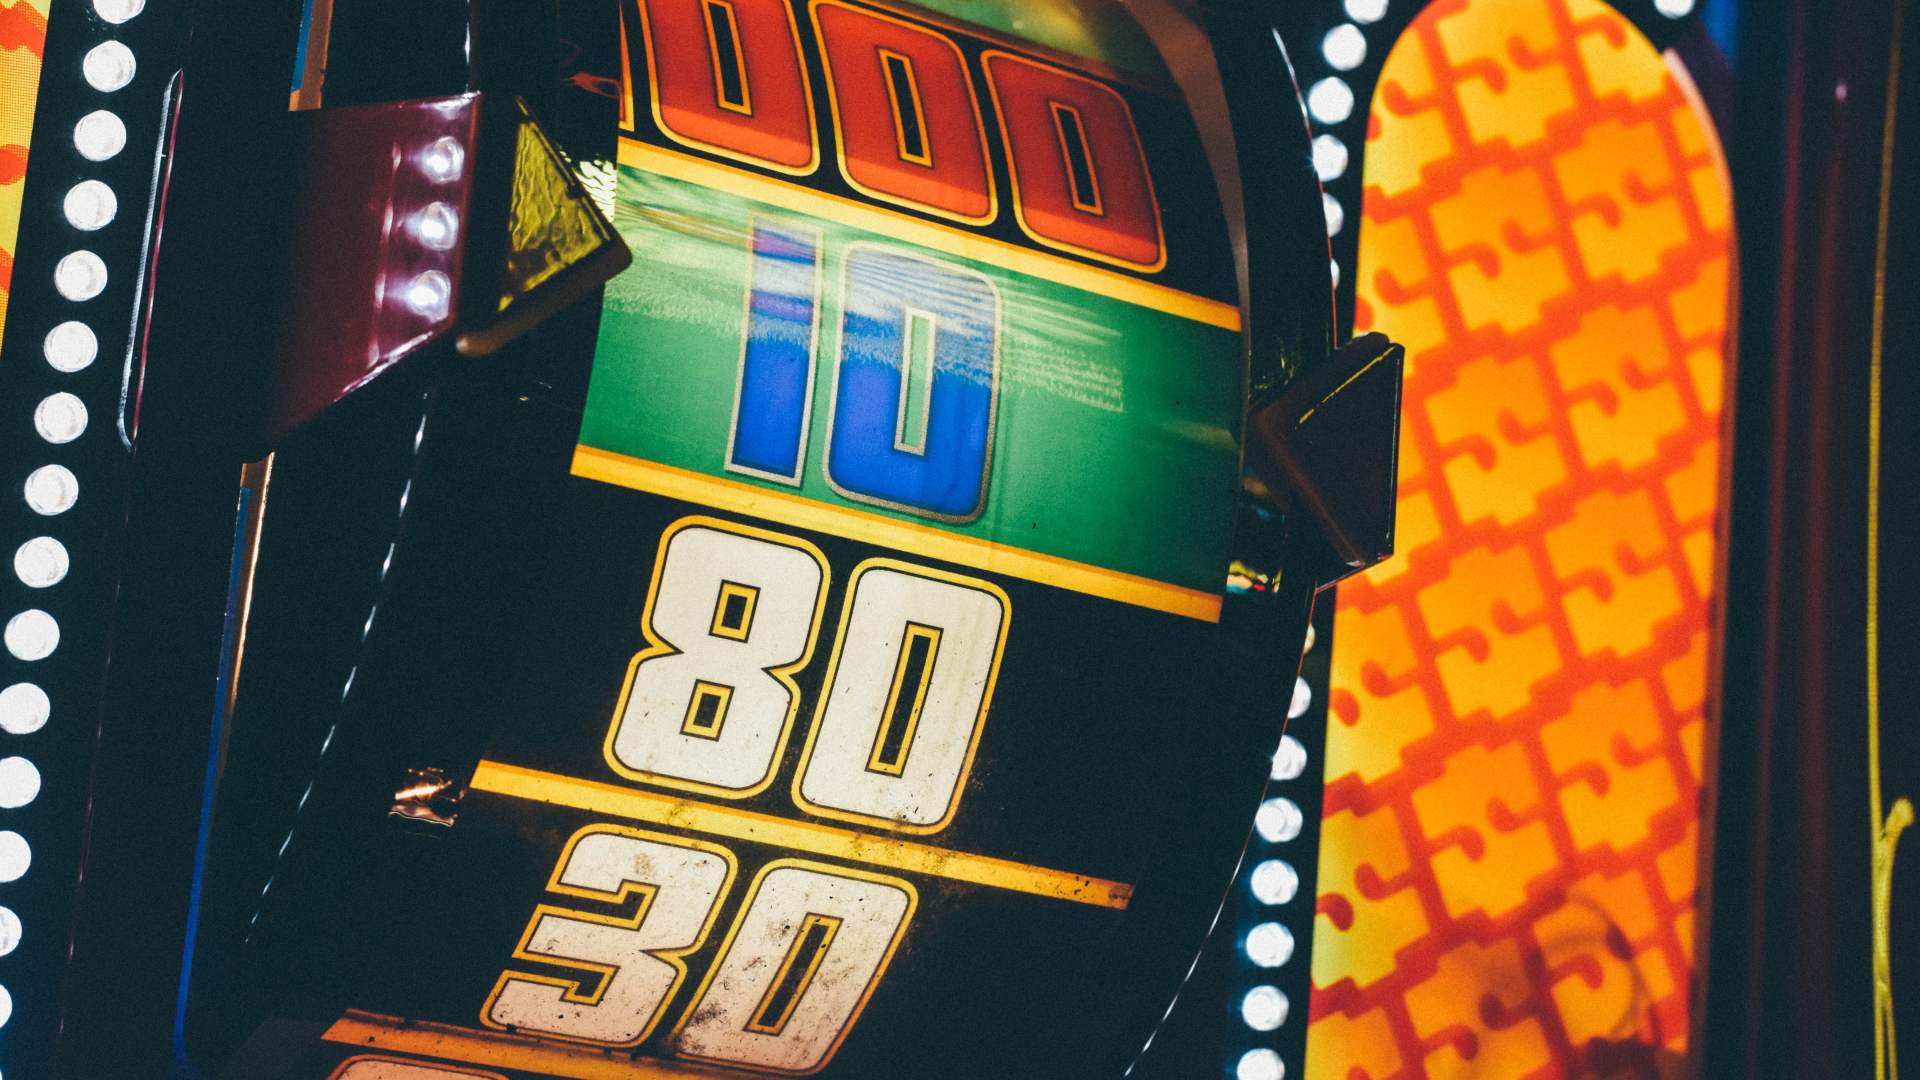 A parceria entre as duas empresas lançou um jogo de slot de cassino ao vivo para a 888casino.